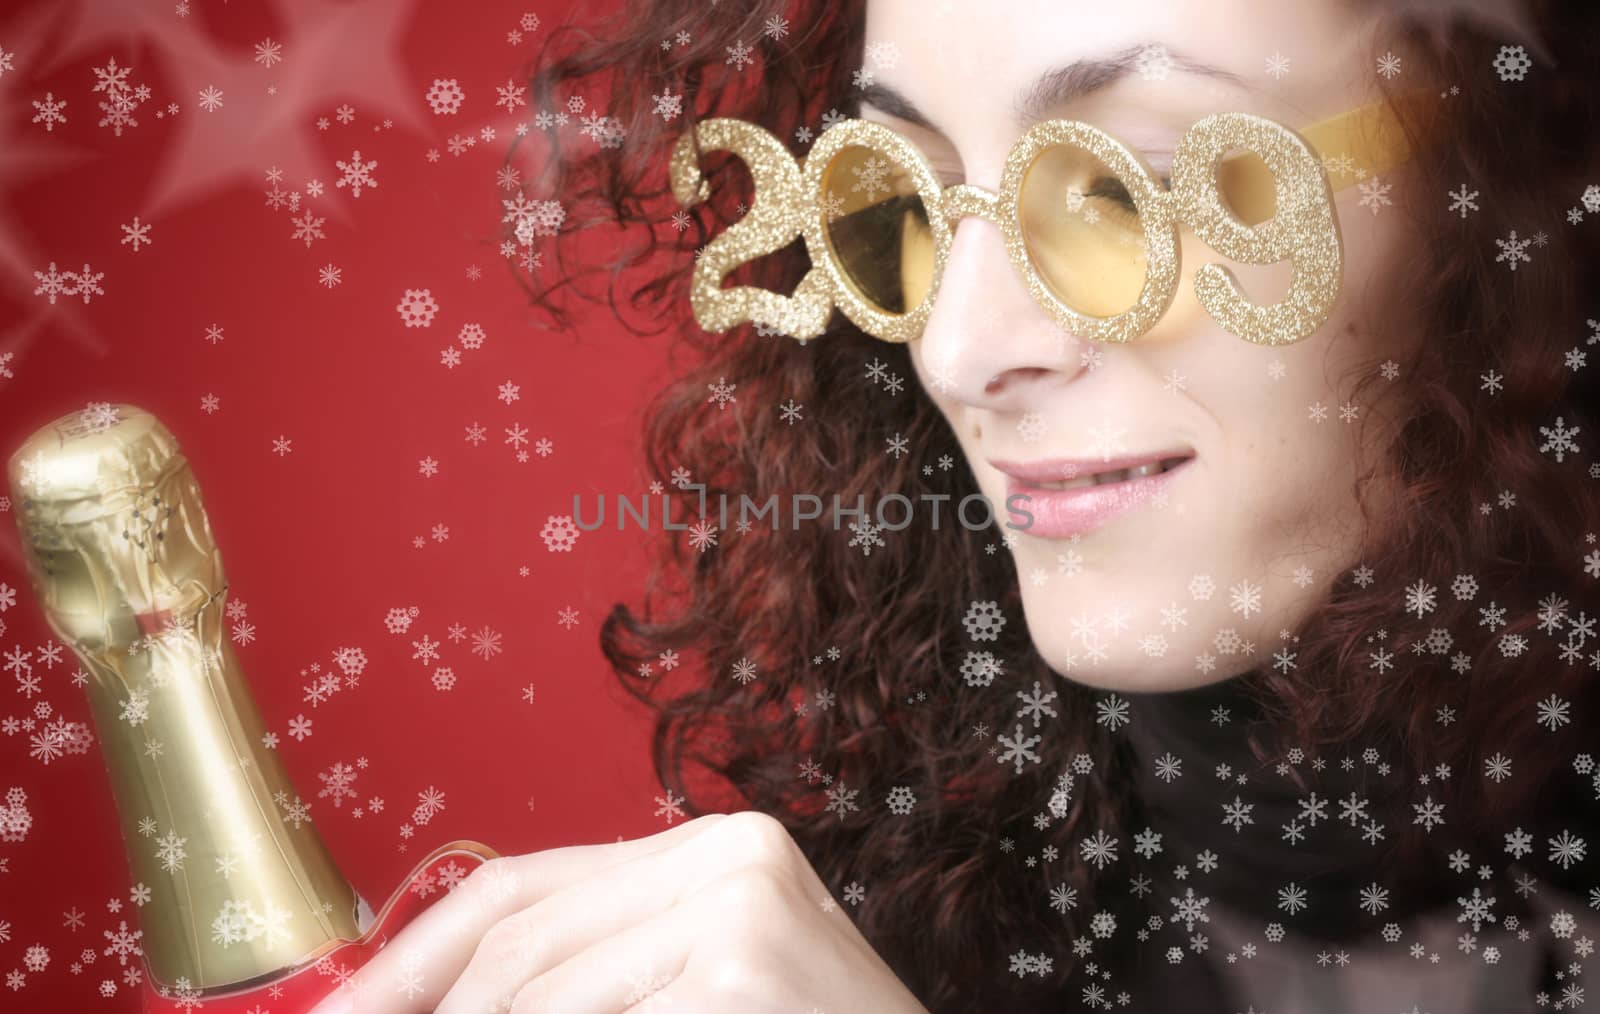 Happy new year by arosoft